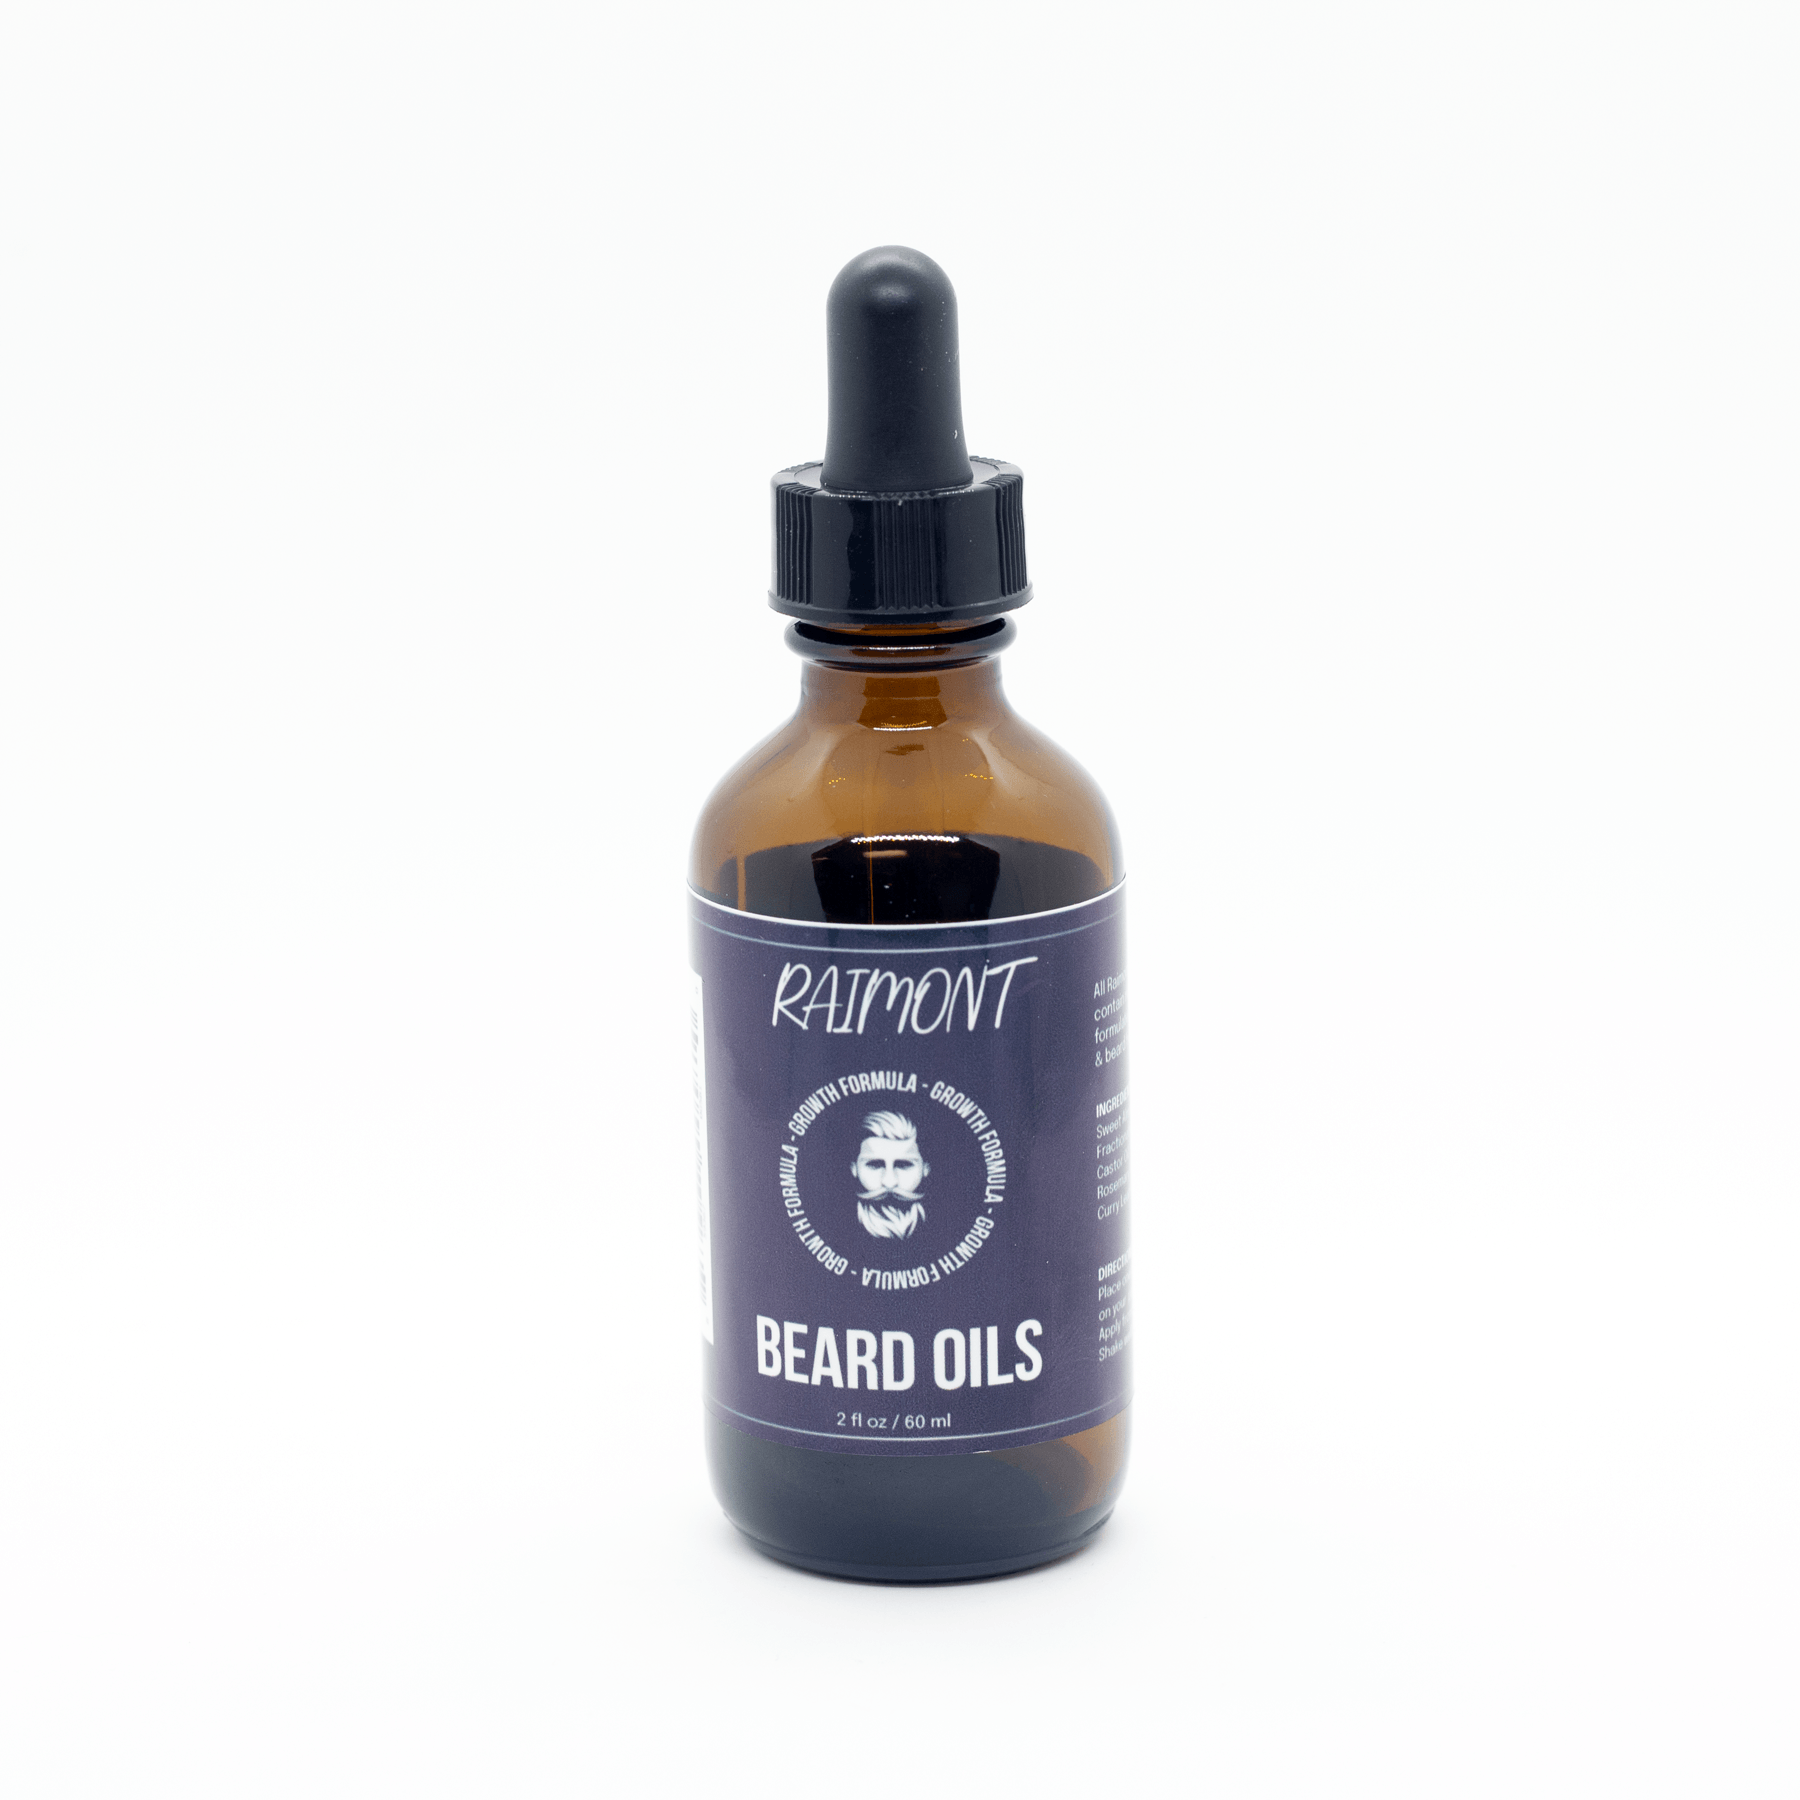 Health & Growth Beard Oil